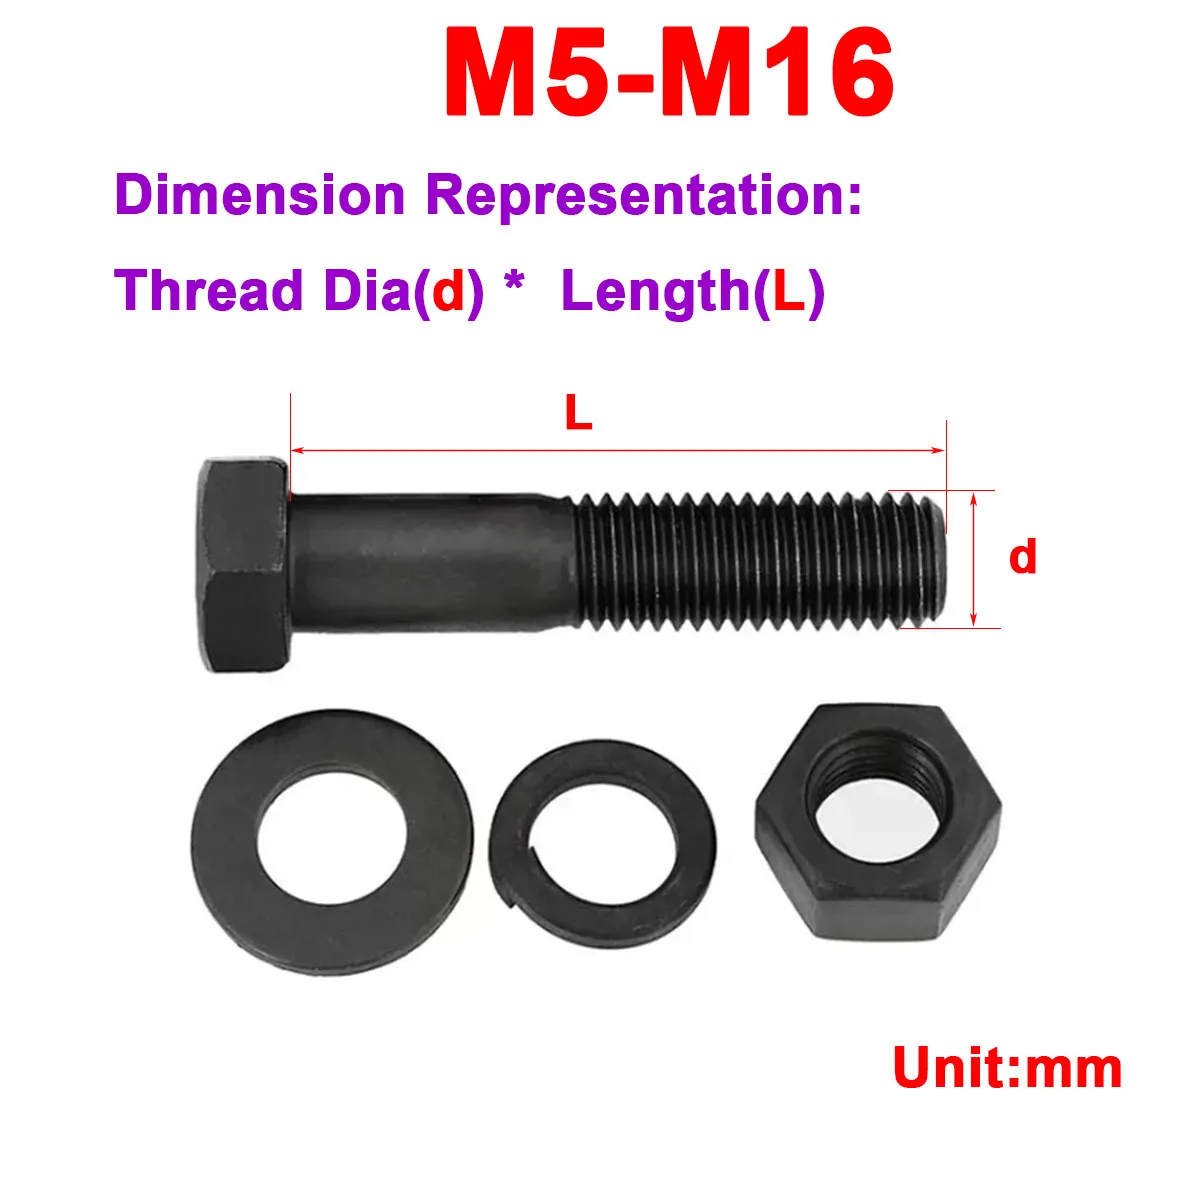 12.9 Aço Grau Externo Hexagonal Integral / Meio Dente de Alta Resistência, o Parafuso E a Porca Combinação M14M16